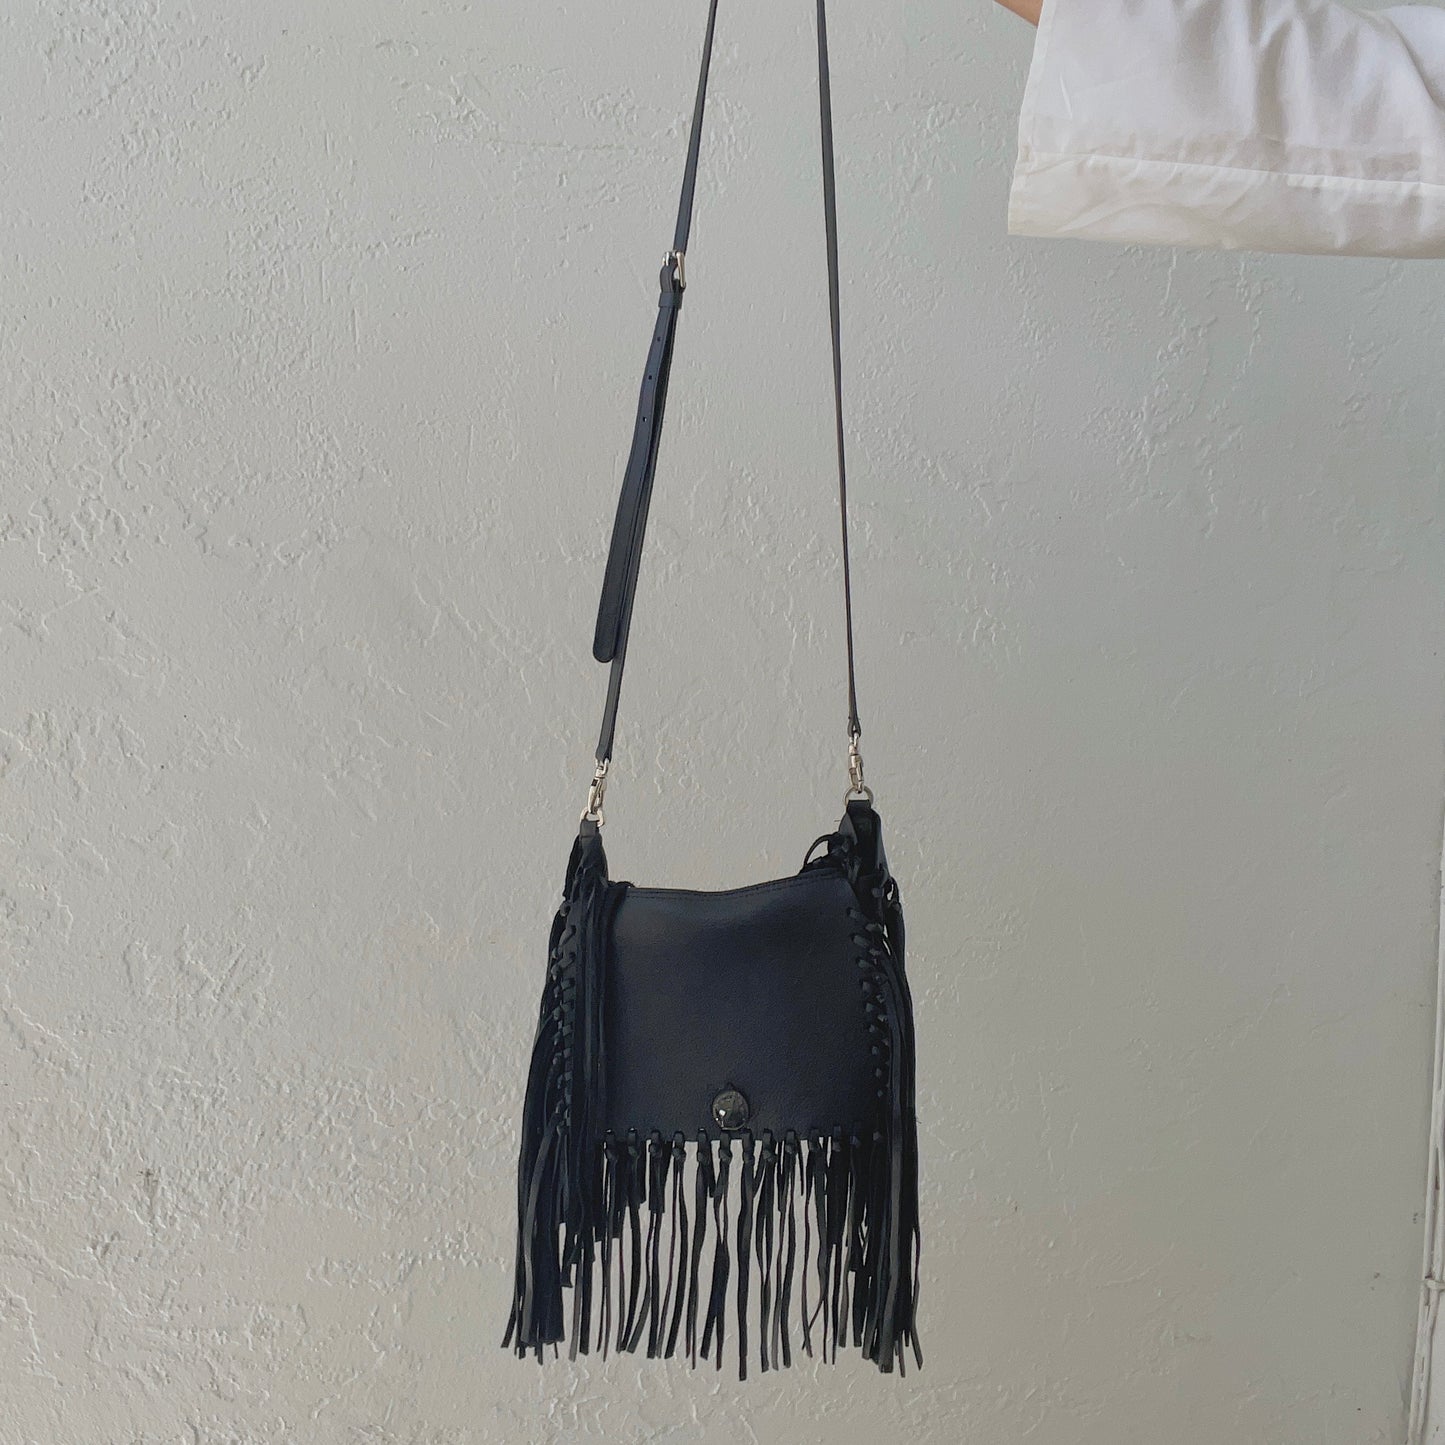 Laggo Black Leather Fringe Bag